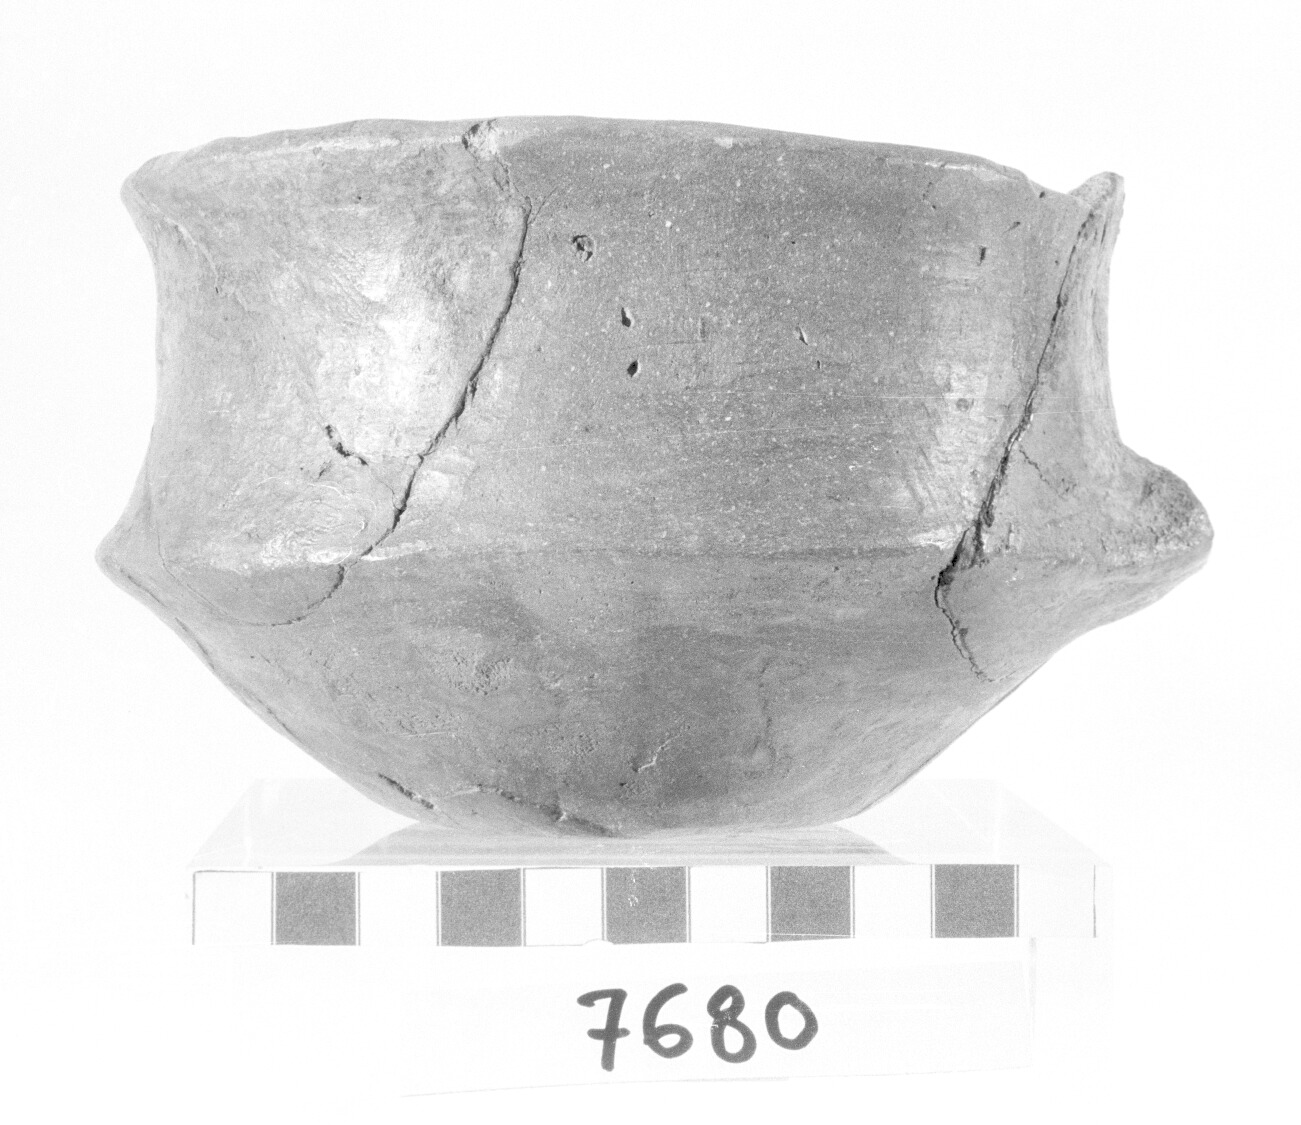 scodella carenata - Protovillanoviano, fase Pianello I (fine/ inizio secc. XIII-XII a.C)